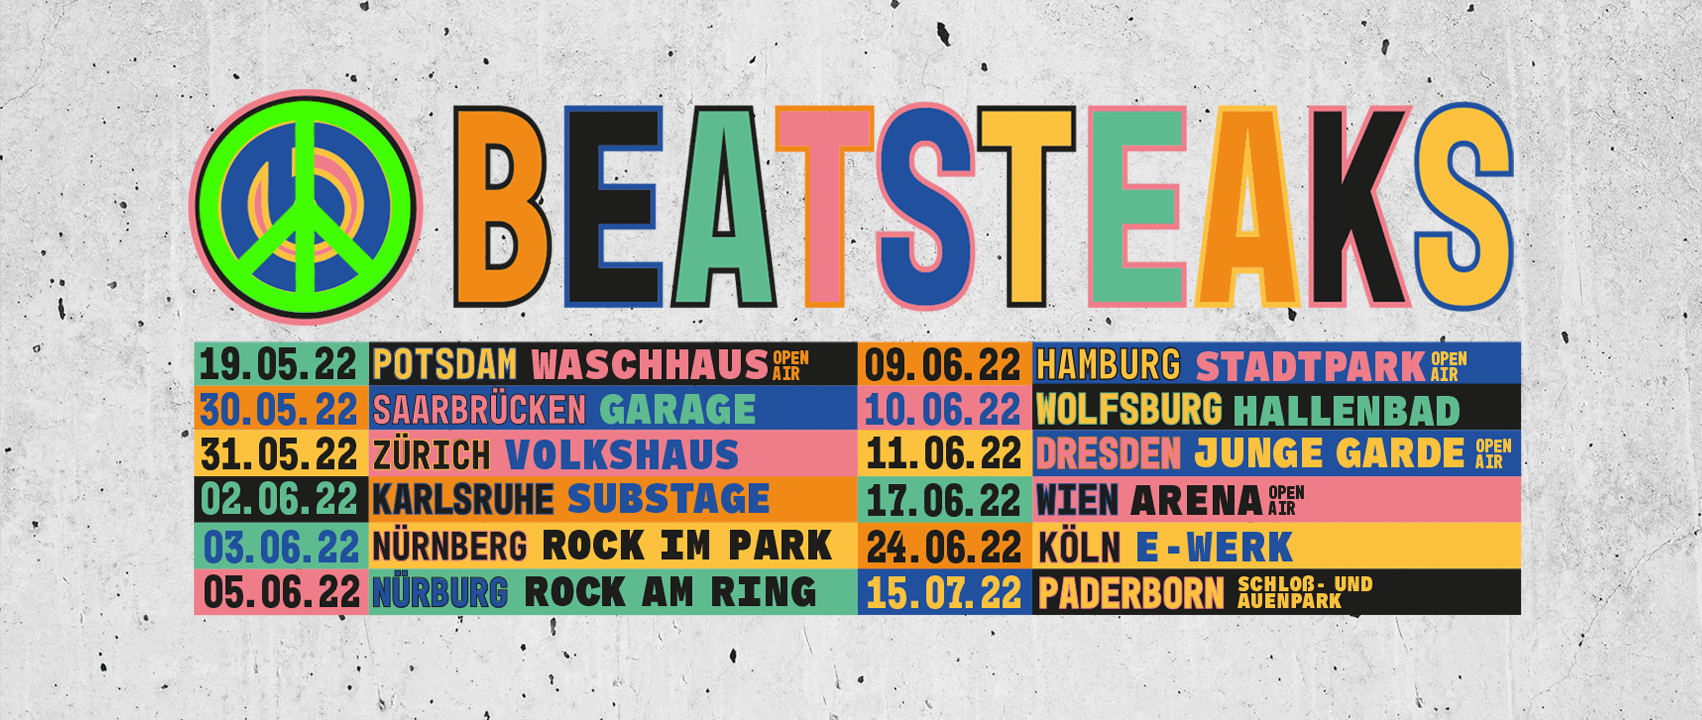 Beatsteaks Tour 2022